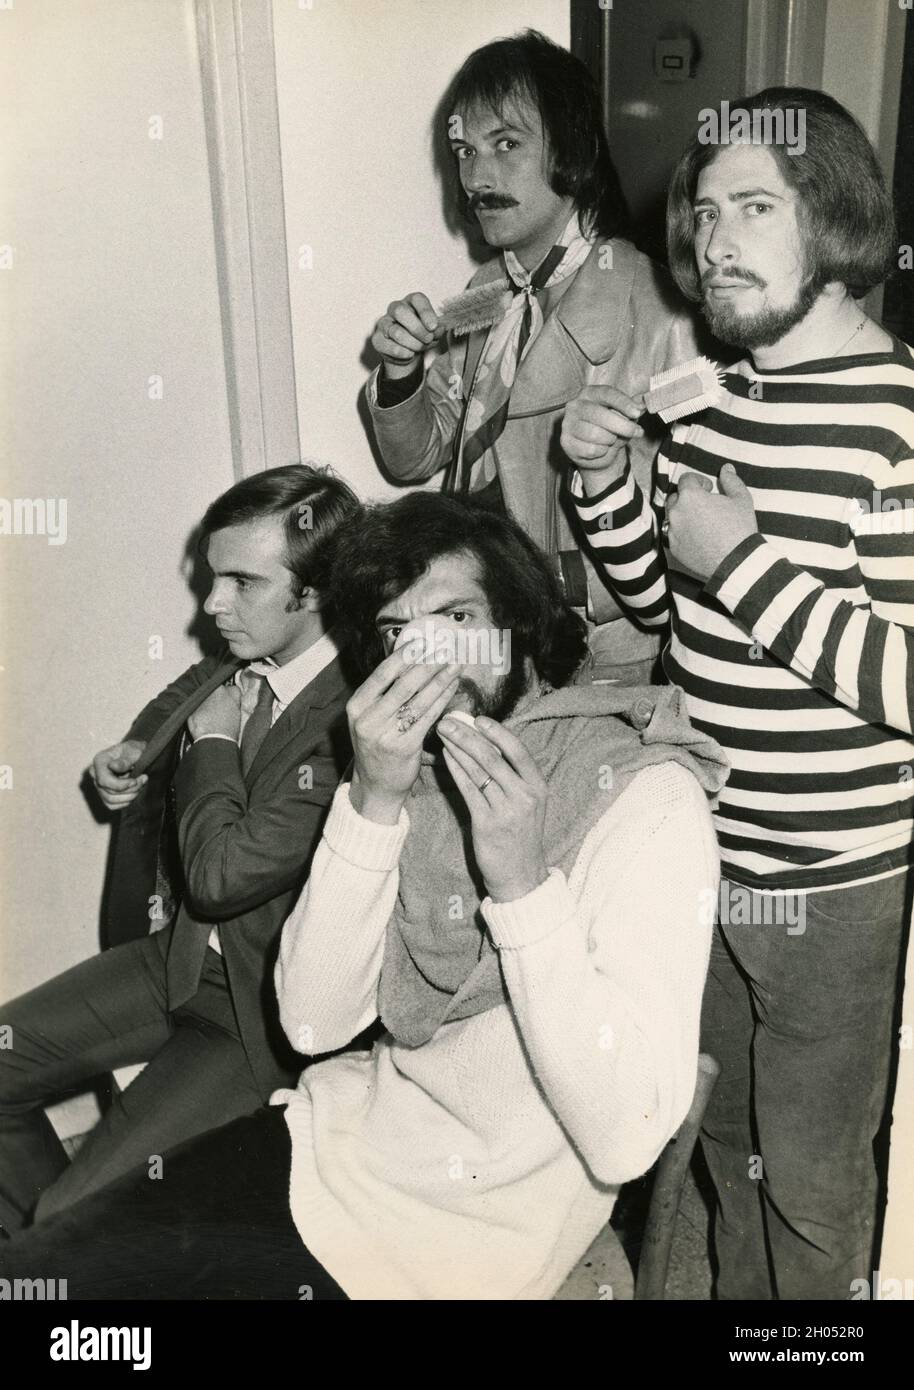 British pop band The Rokes, Italy 1960s Stock Photo